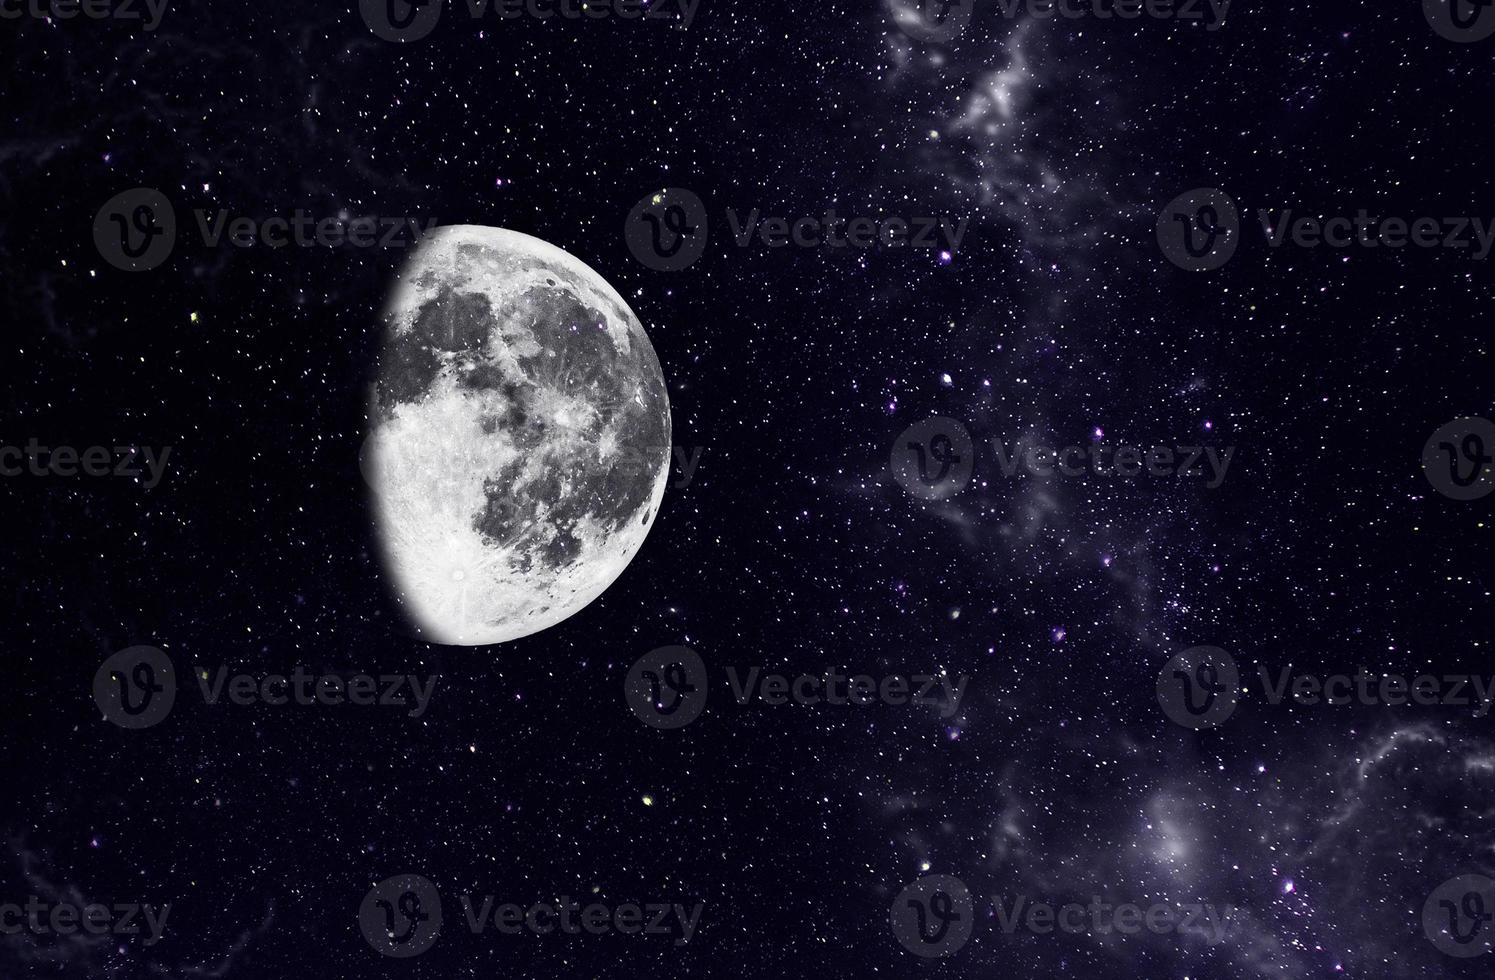 lichtblauw dramatisch sterrenstelsel nachtpanorama vanuit de ruimte van het maanuniversum op de nachtelijke hemel foto